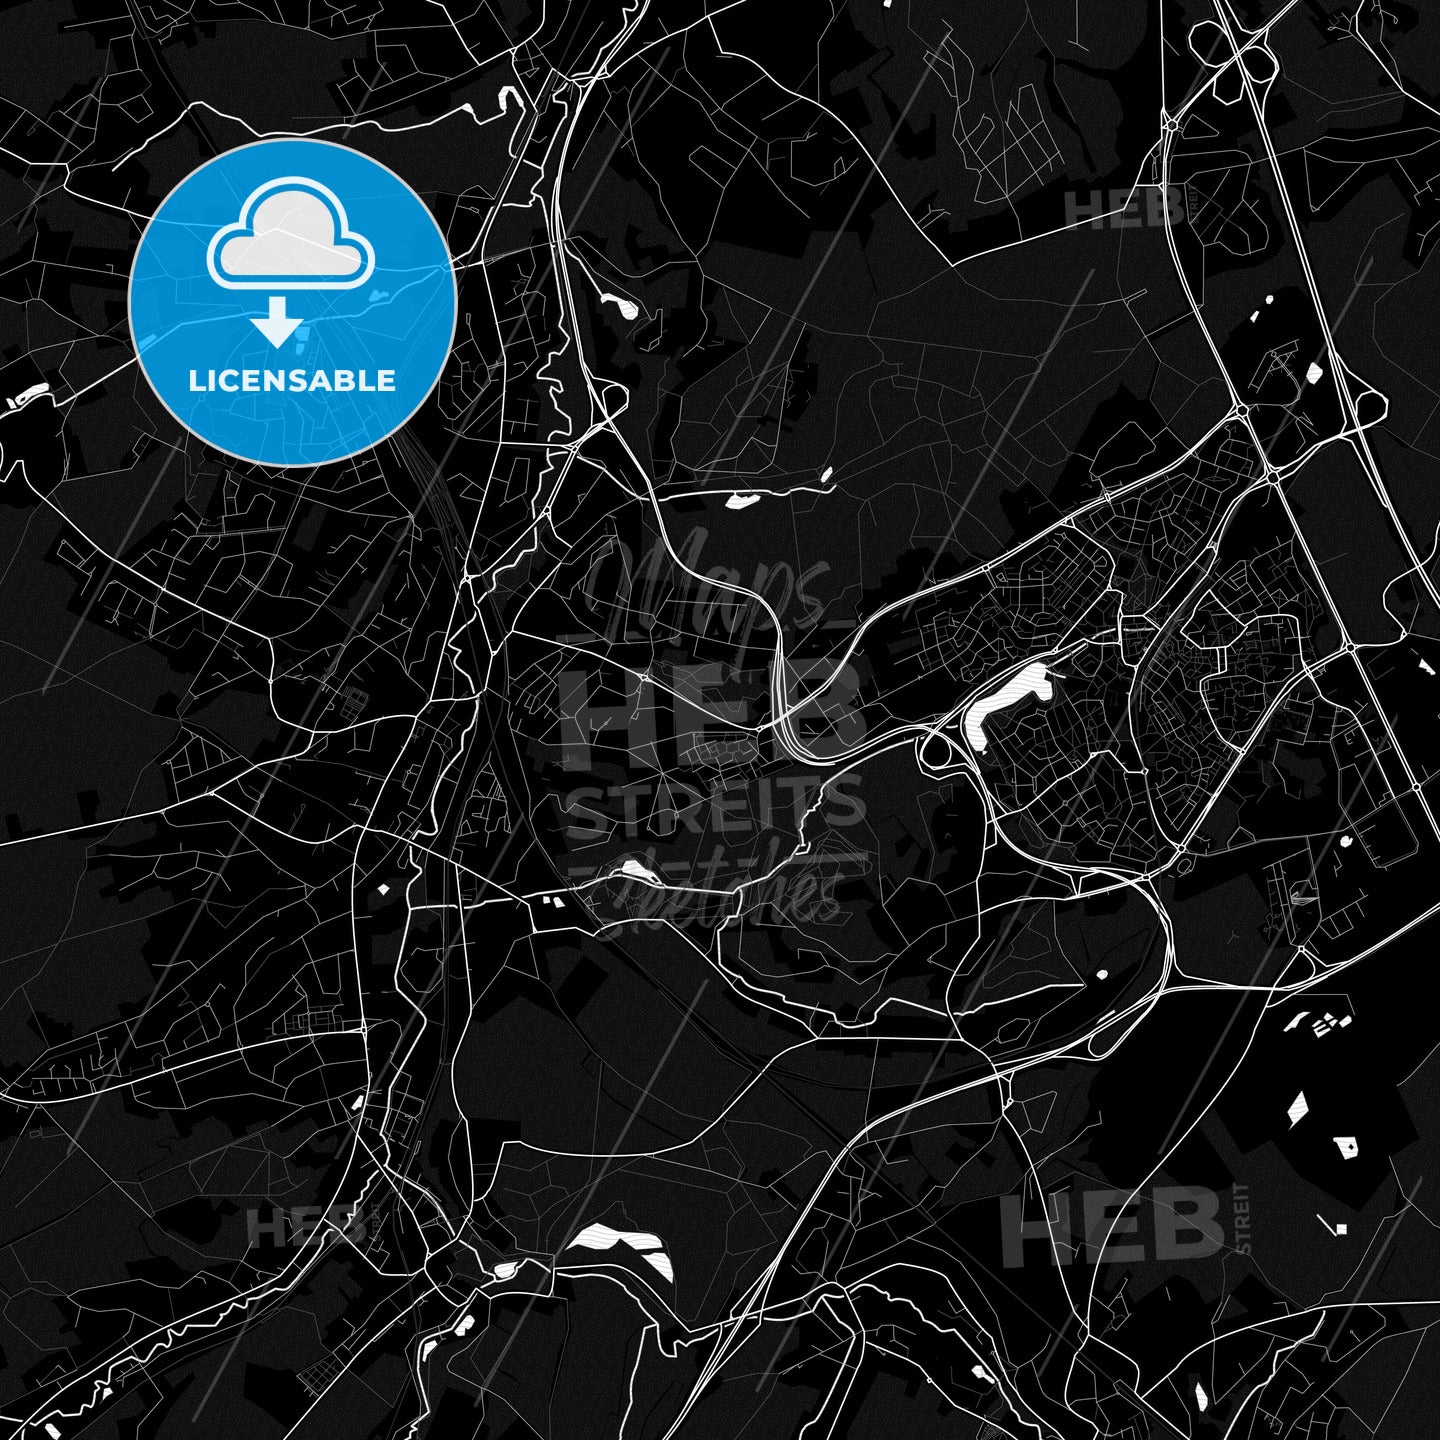 Ottignies-Louvain-la-Neuve, Belgium PDF map